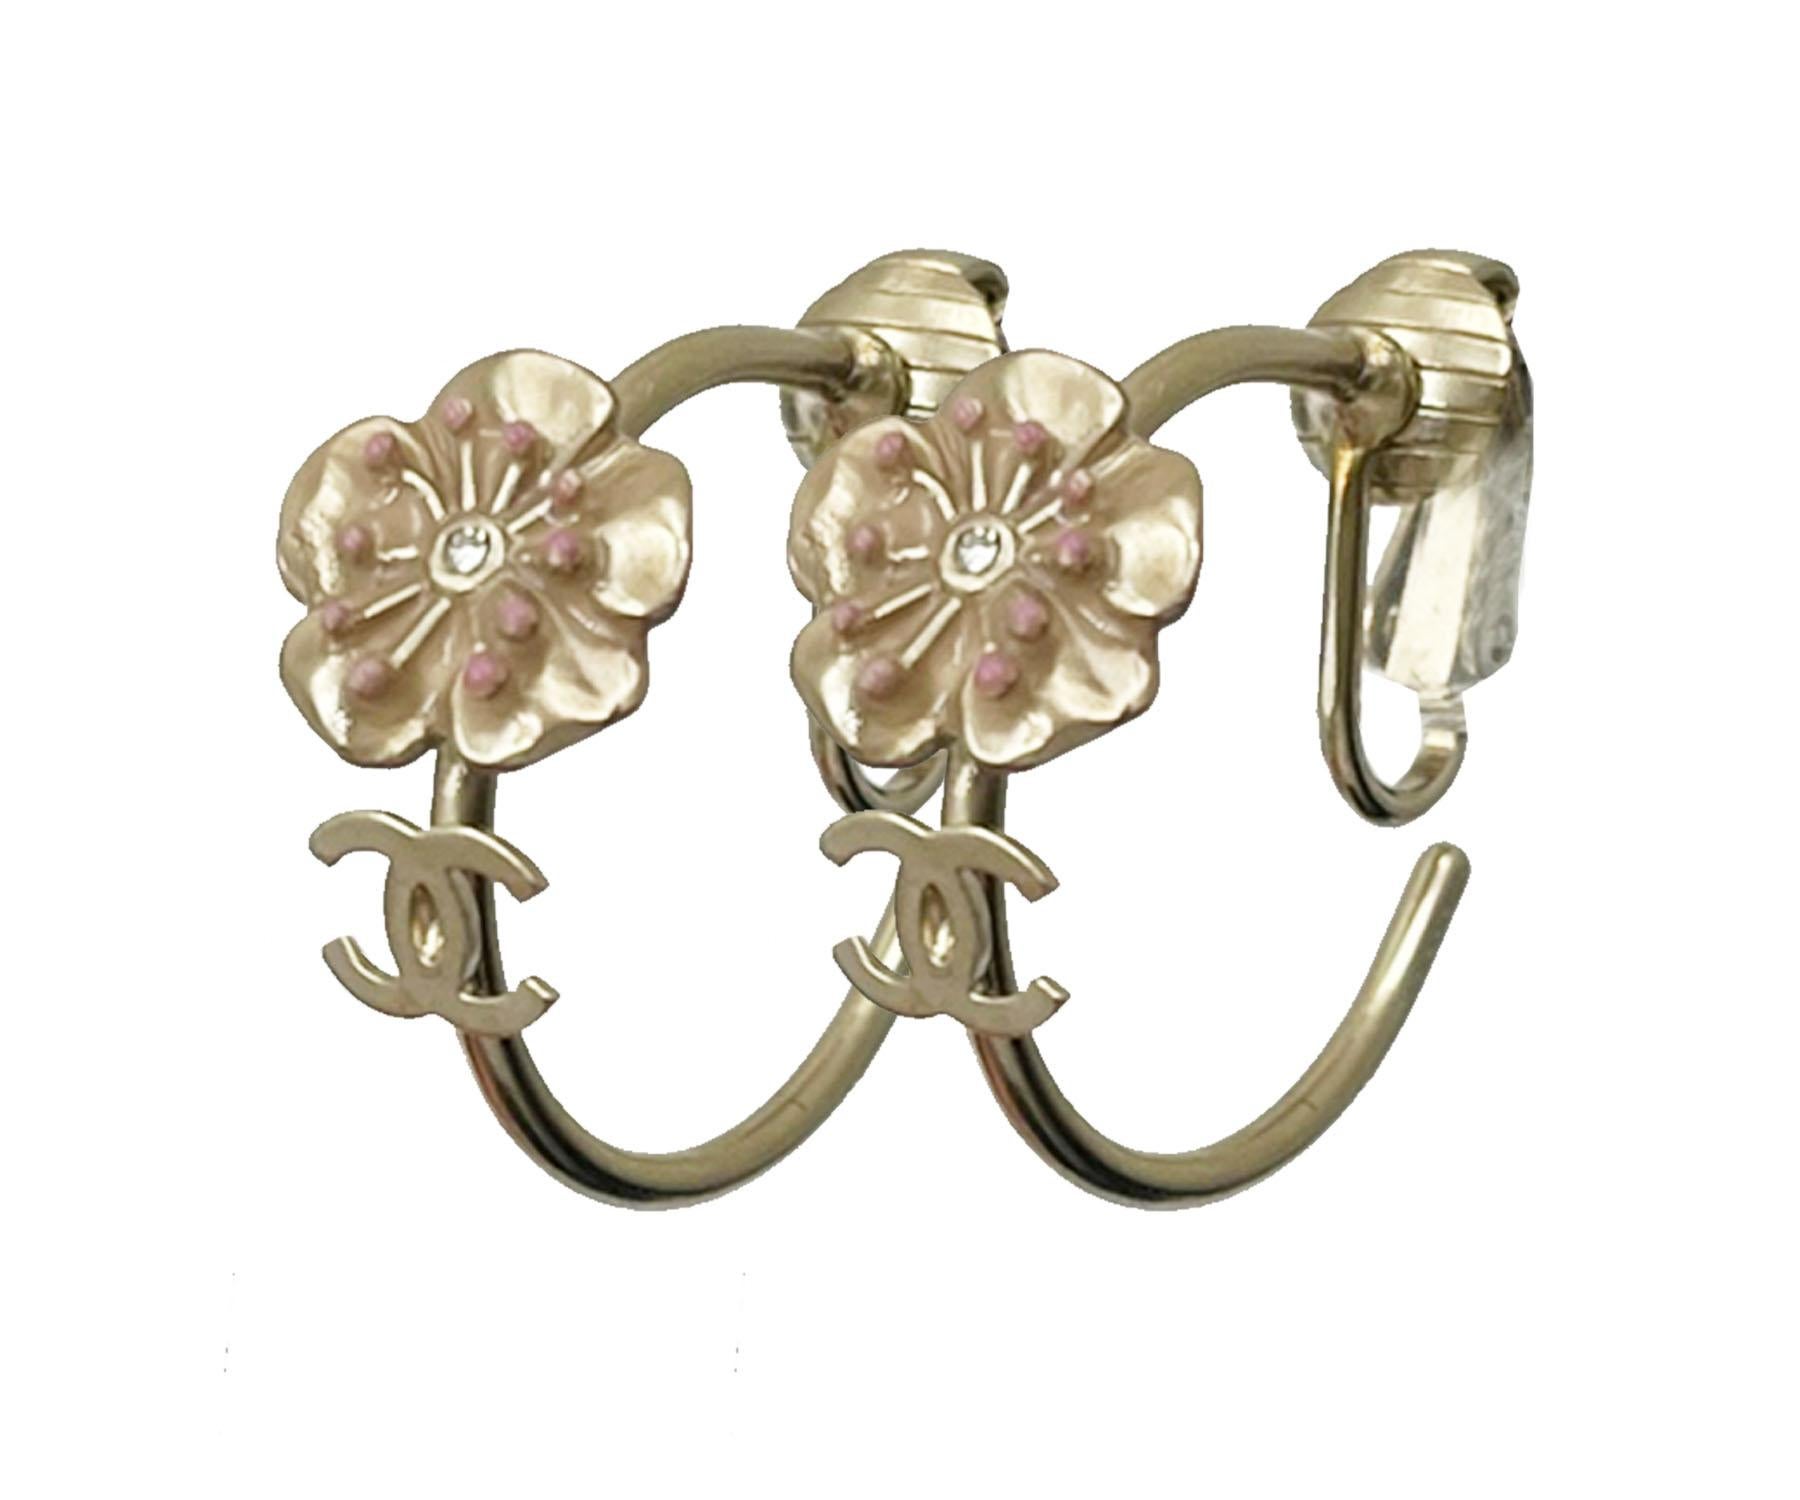 Chanel Gold CC Rosa Blume Reifen Clip auf Ohrringe

*Markiert 13
*Hergestellt in Italien
*Kommt mit dem originalen Staubbeutel

-Er ist ungefähr 0,75